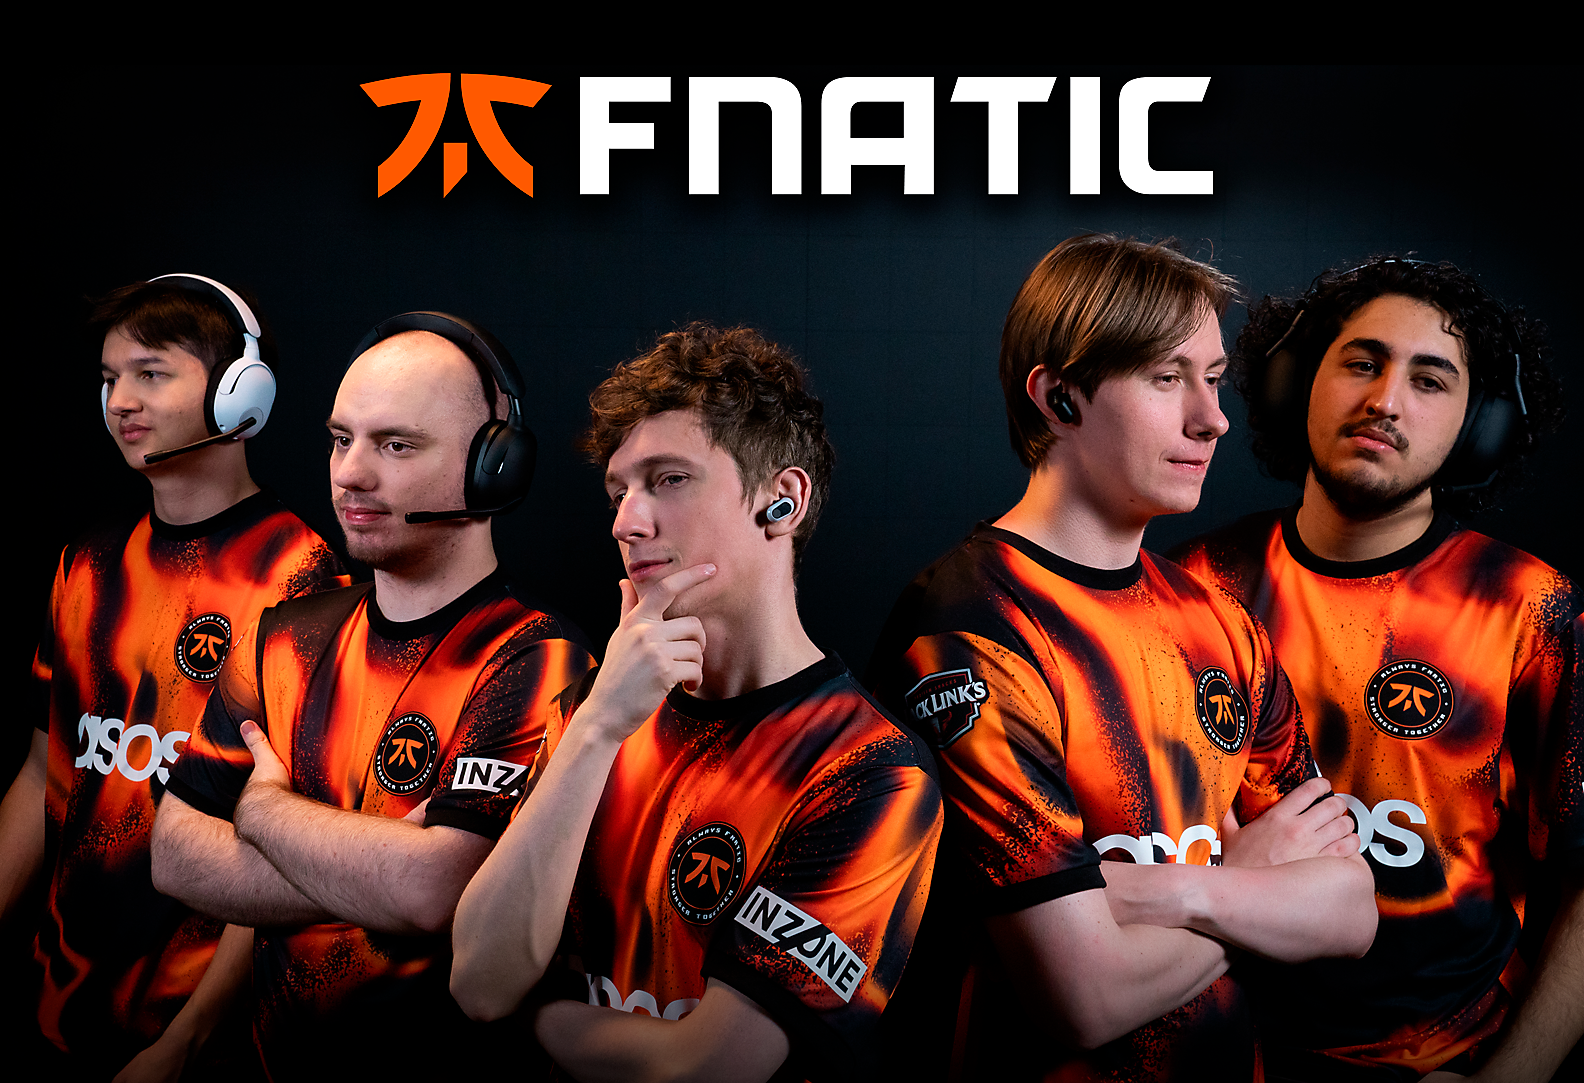 Immagine del team Fnatic di VALORANT su sfondo scuro con il logo Fnatic in primo piano